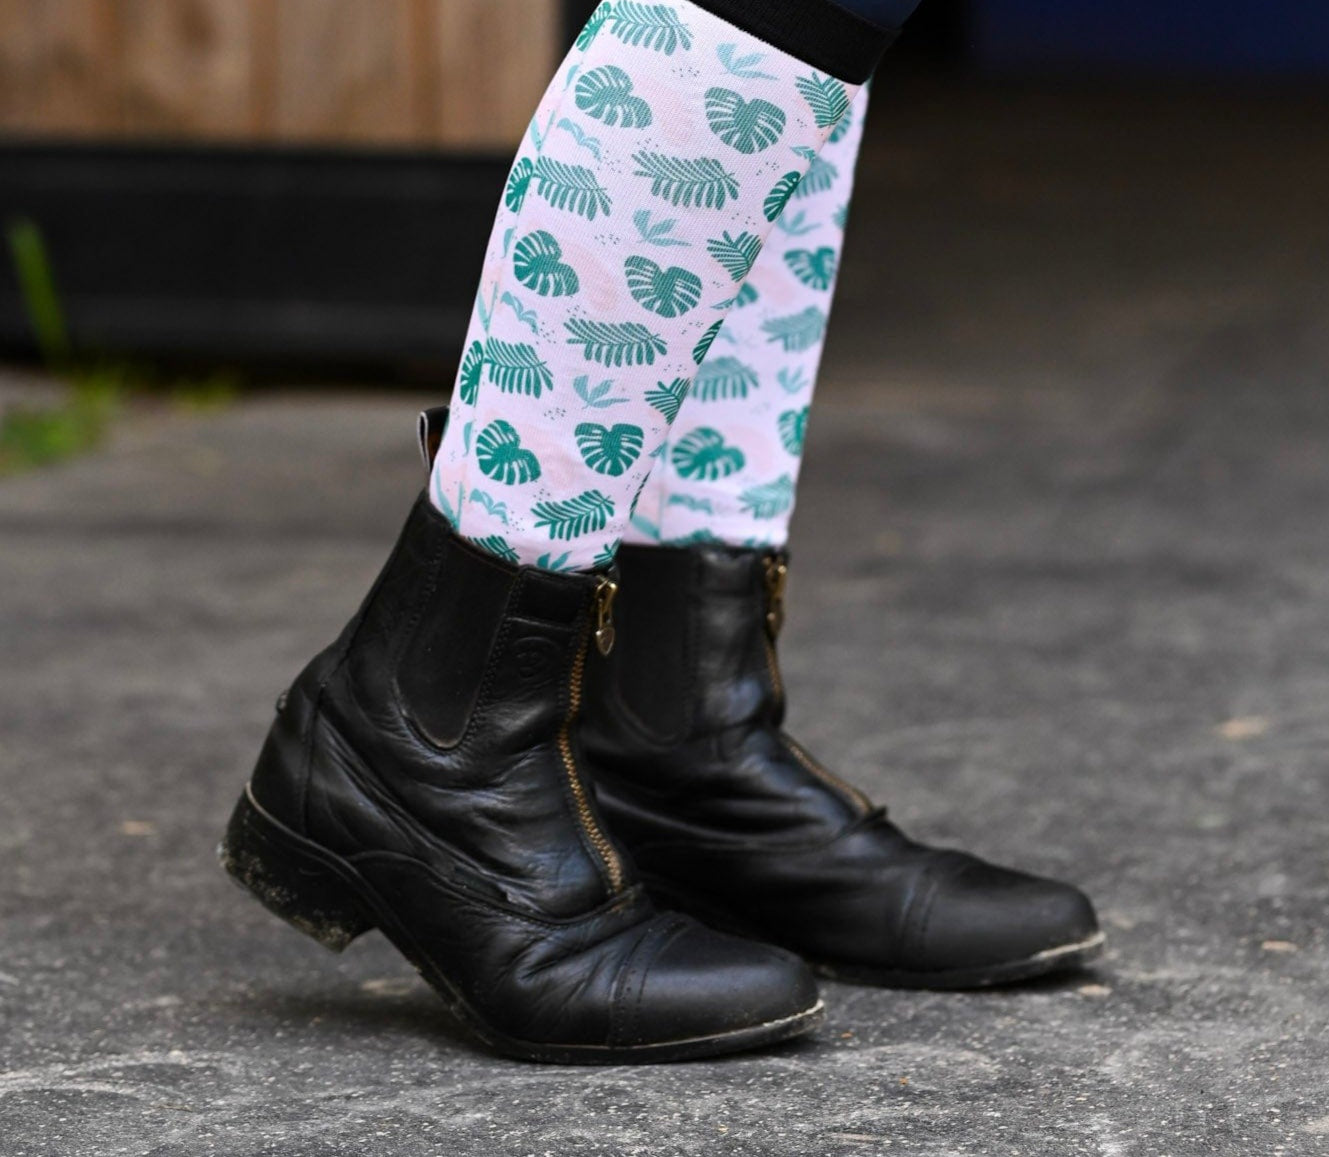 D&S LIMITED EDITION Limited Edition Limited Palms Socks equestrian boot socks boot socks thin socks riding socks pattern socks tall socks funny socks knee high socks horse socks horse show socks